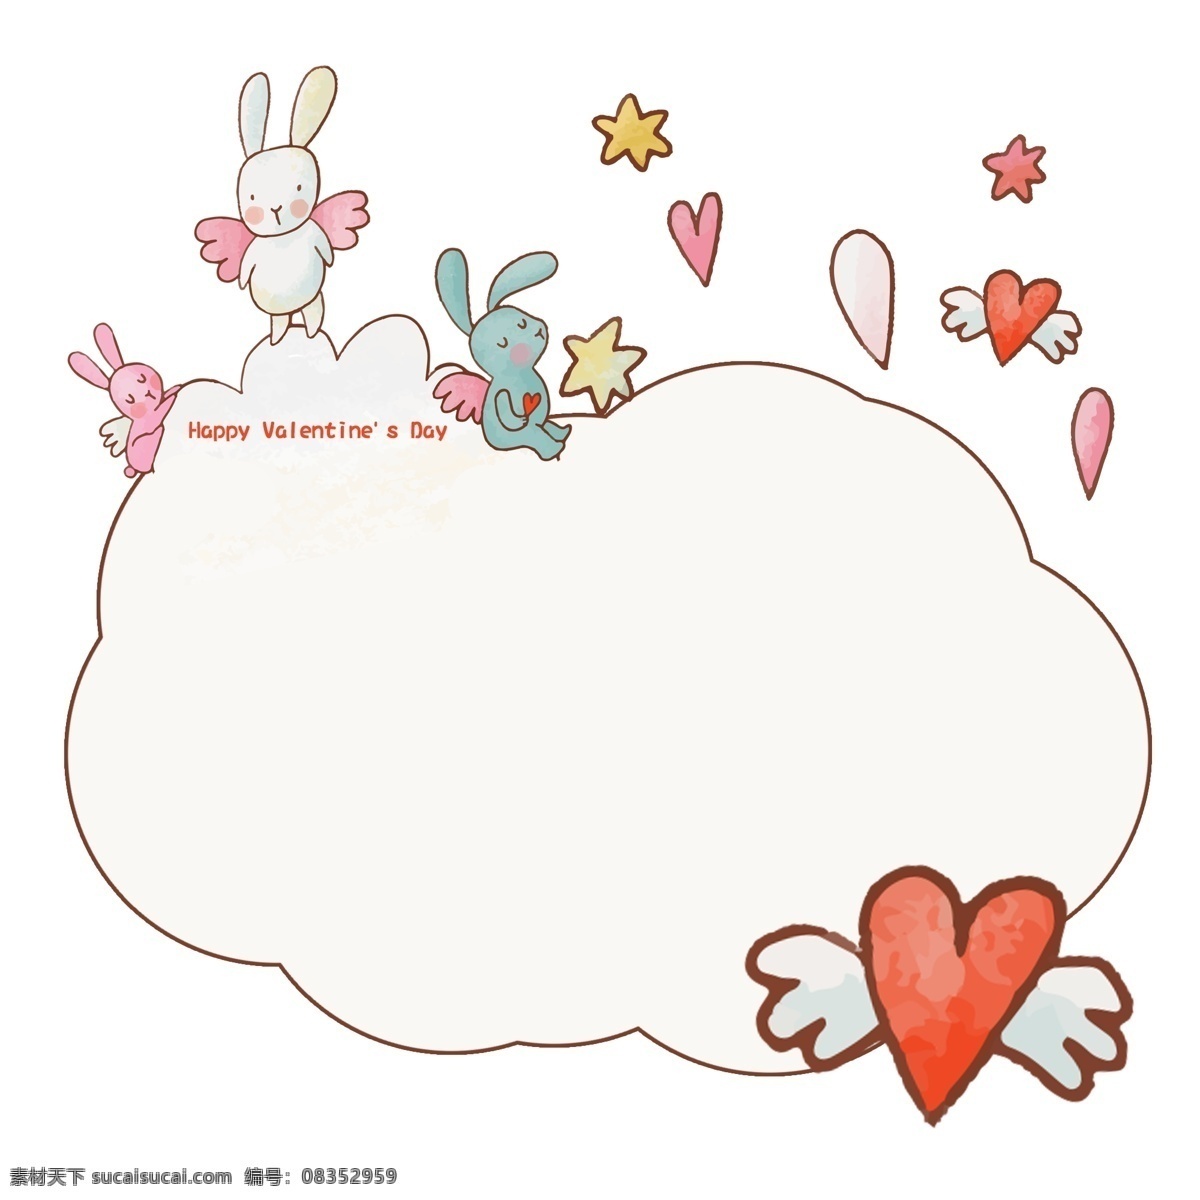 浪漫 情人节 创意 边框 边框纹理 创意边框 动物边框 可爱兔子 心 节日 浪漫情人节 庆祝 美观